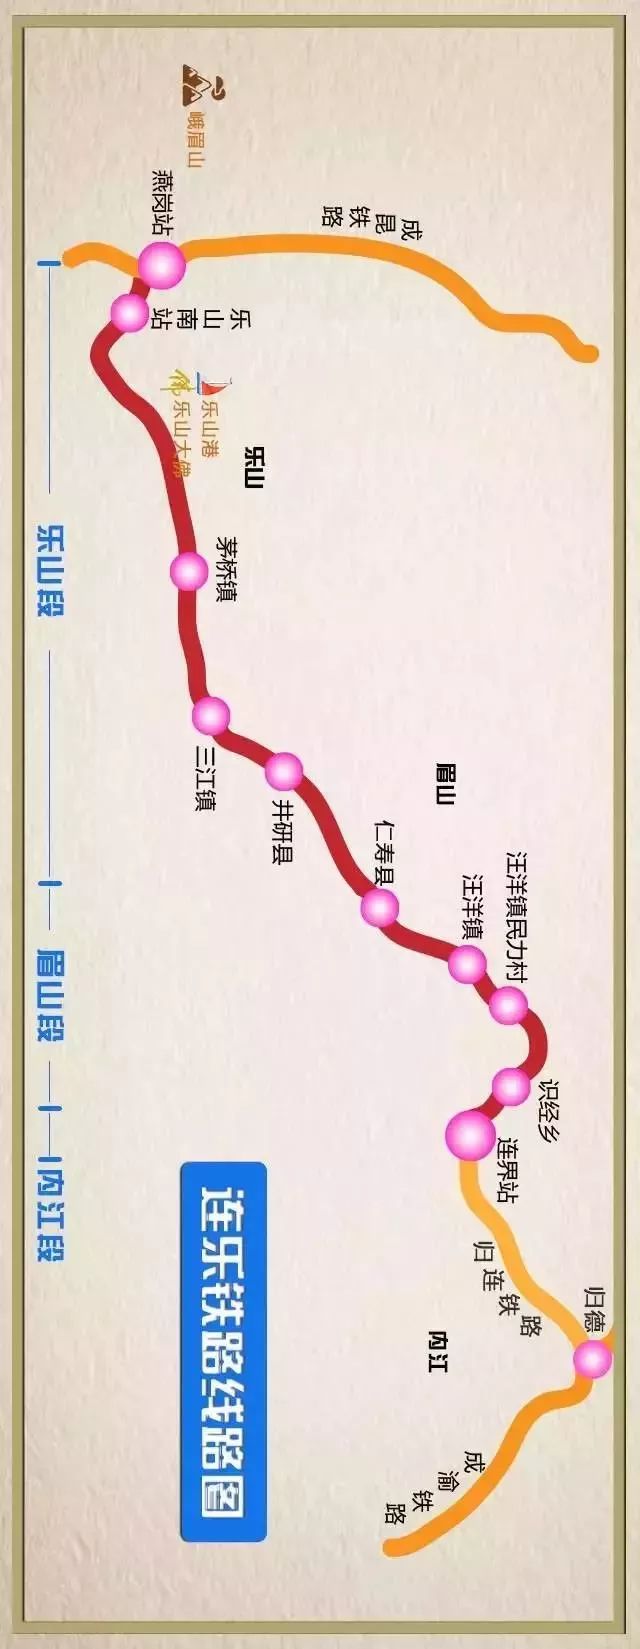 九峰岷江特大桥控制性工程完工!乐山一新铁路通车又近了!